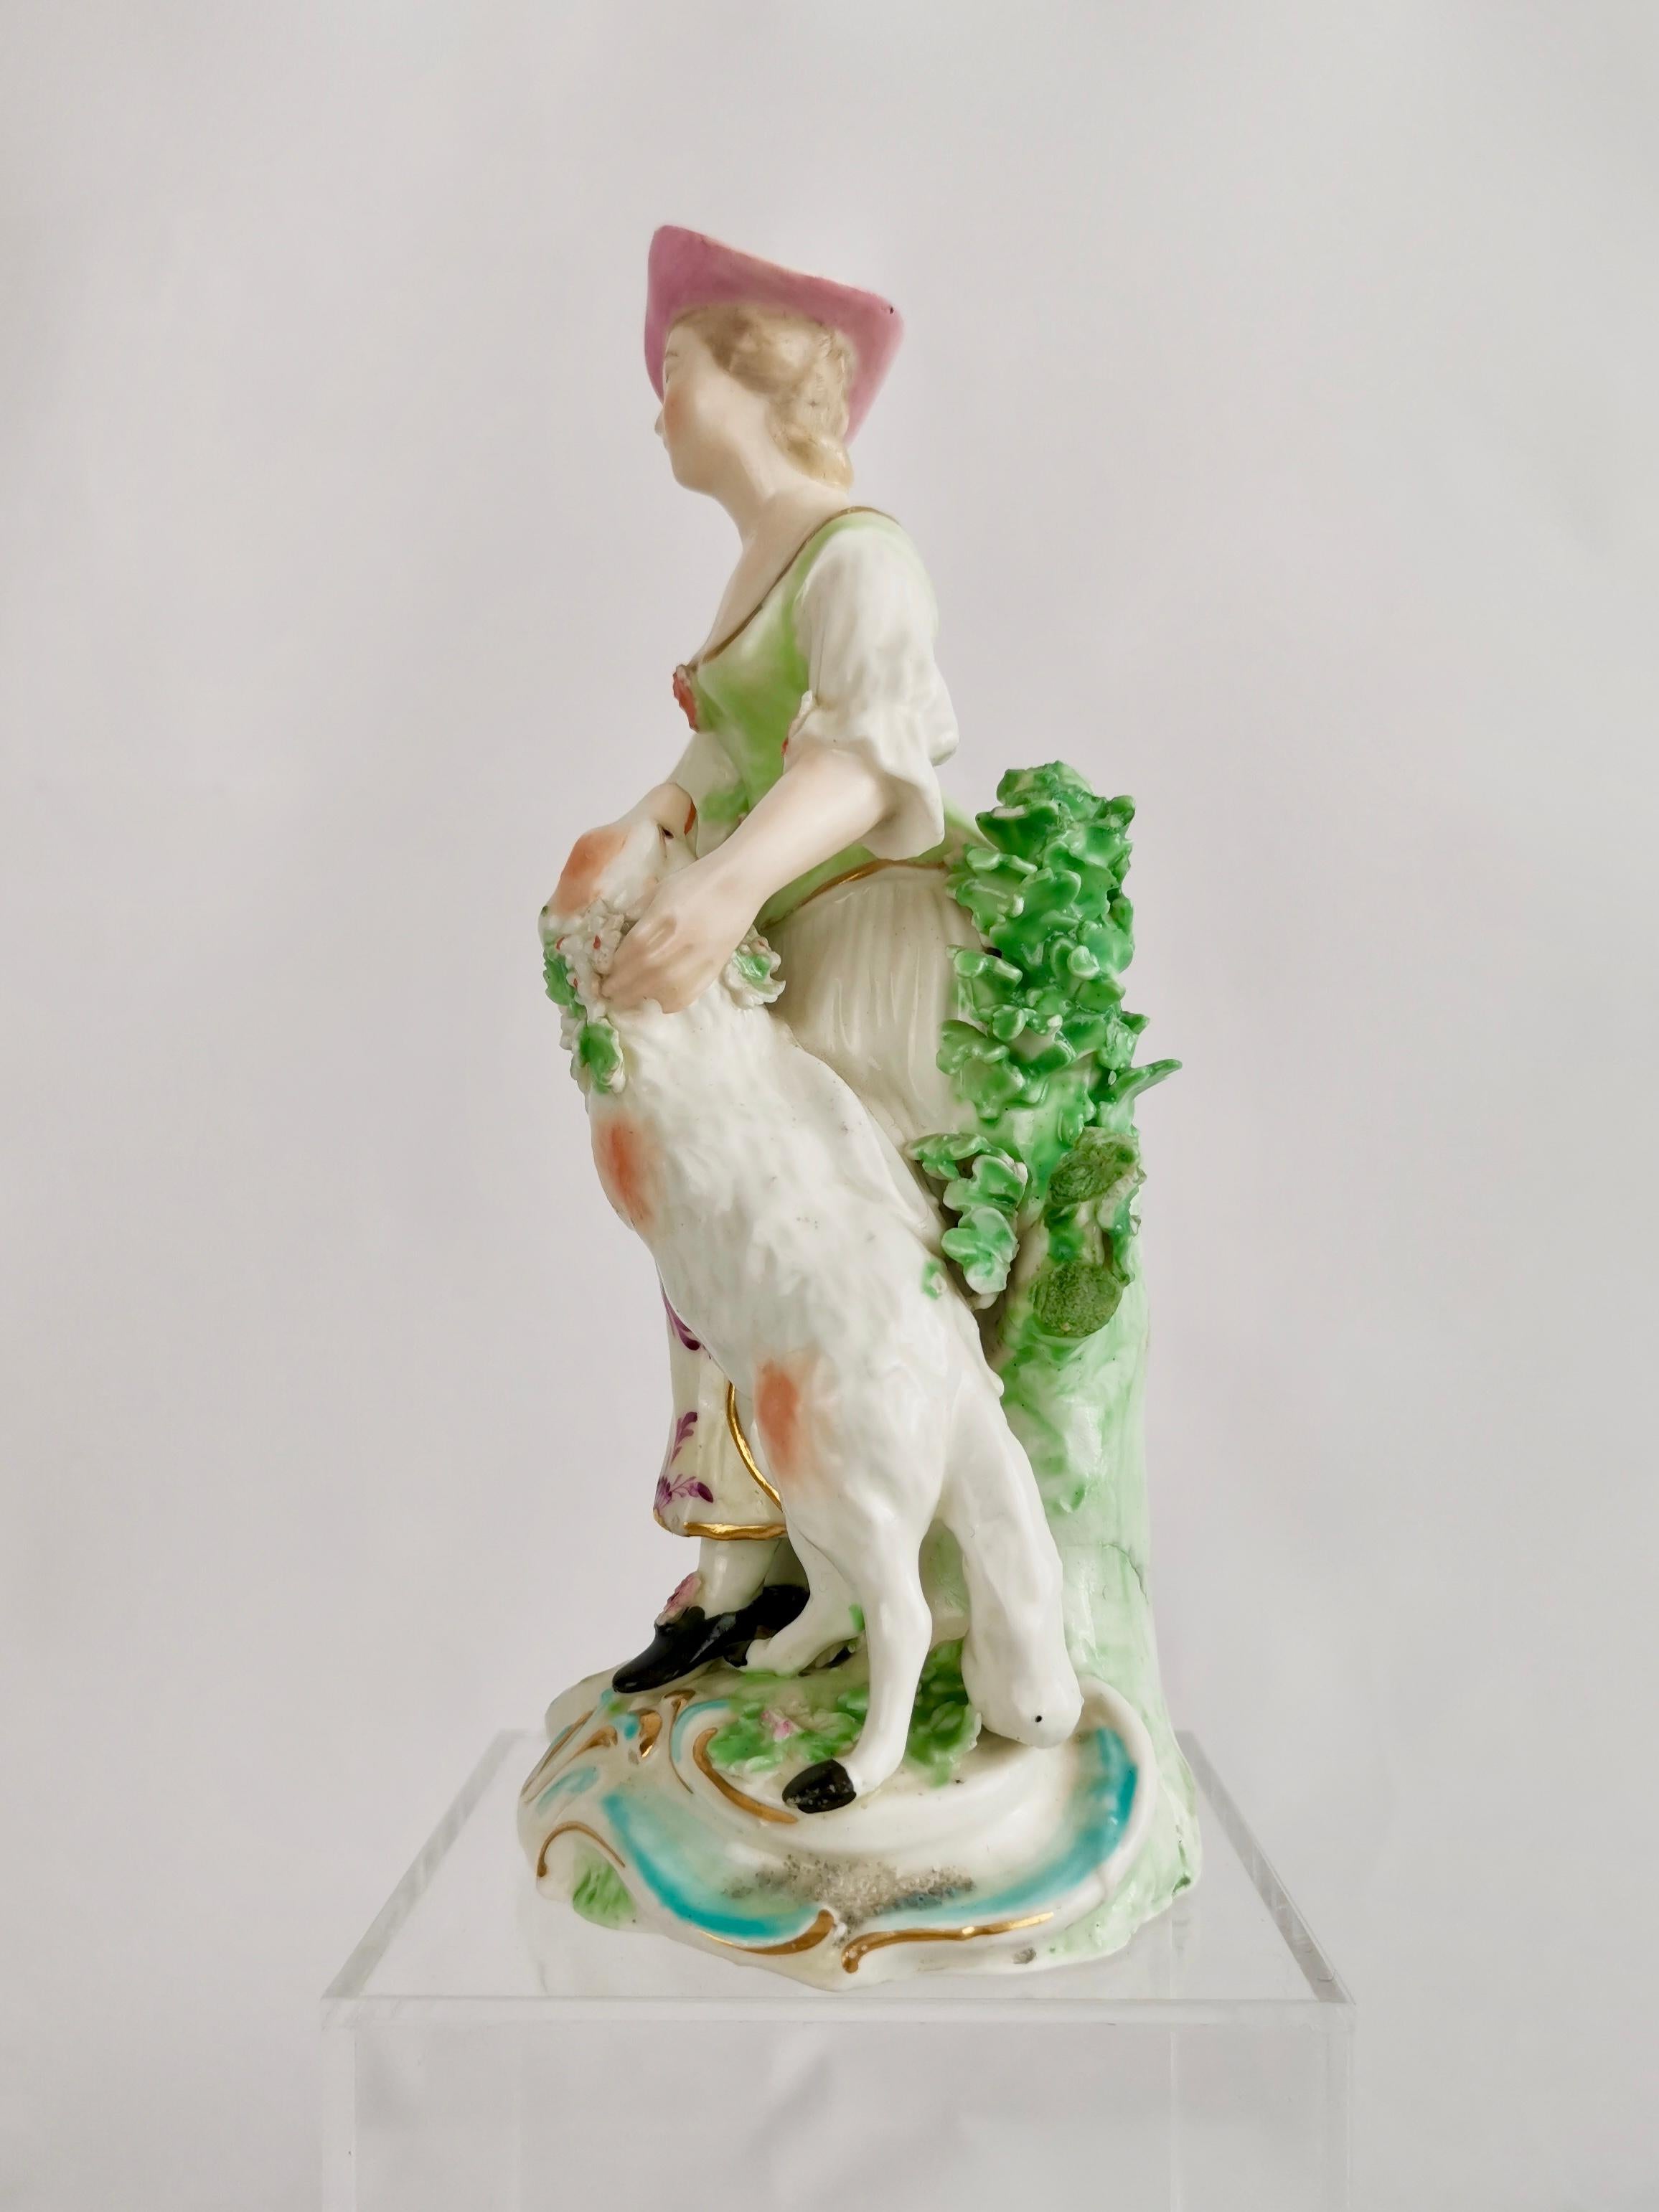 Il s'agit d'une charmante figurine de Derby représentant une bergère avec un agneau enguirlandé, réalisée en 1760 ou peu après. La figure est la moitié d'un ensemble appelé les 